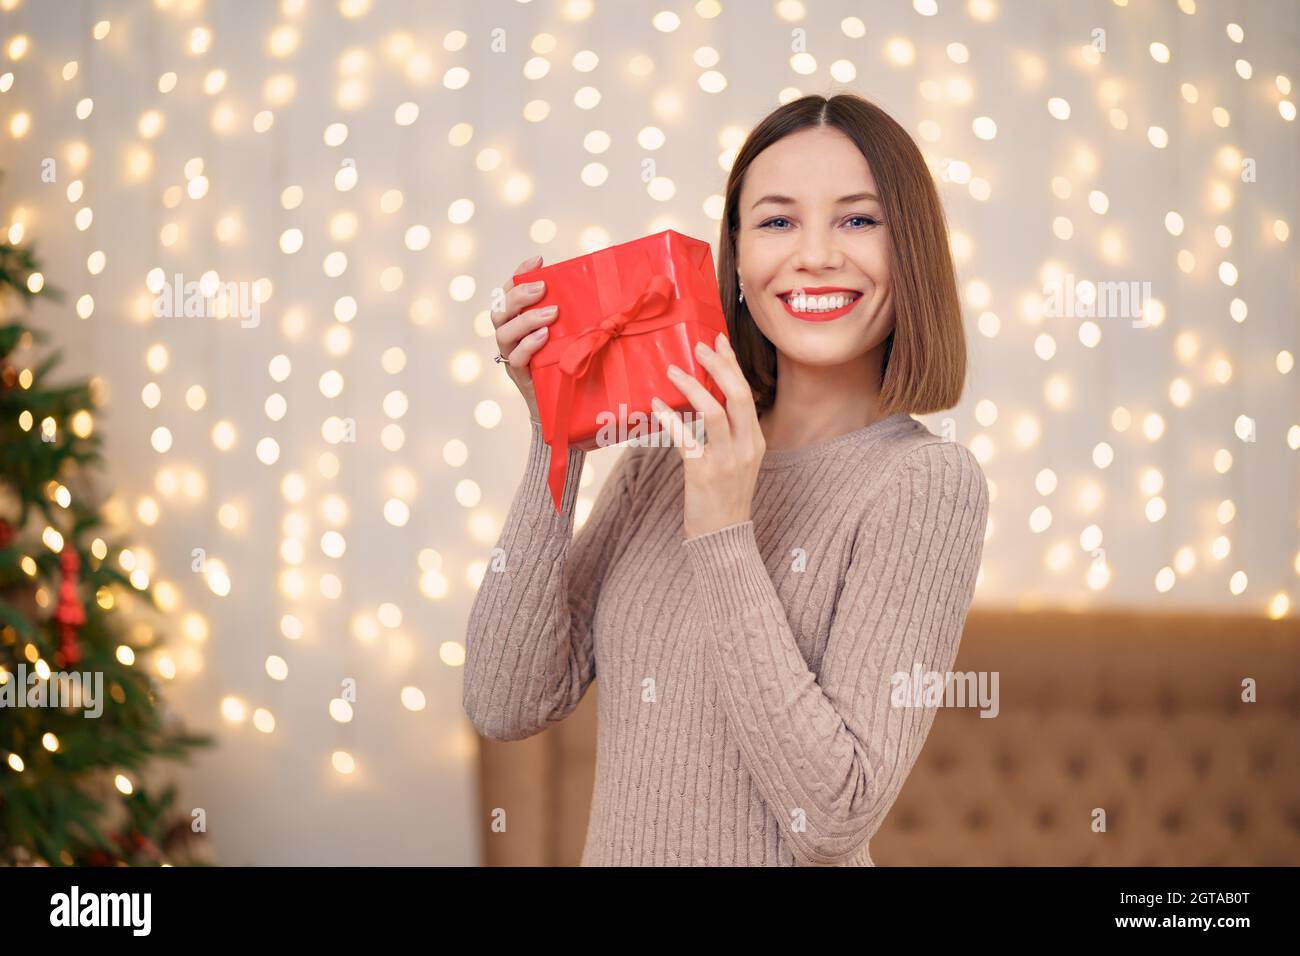 Portrait de jeune femme heureuse lèvres rouges regardant la boîte cadeau emballée.Gros plan la femme satisfaite a reçu la boîte actuelle.Arrière-plan des lumières de Noël festives. Banque D'Images